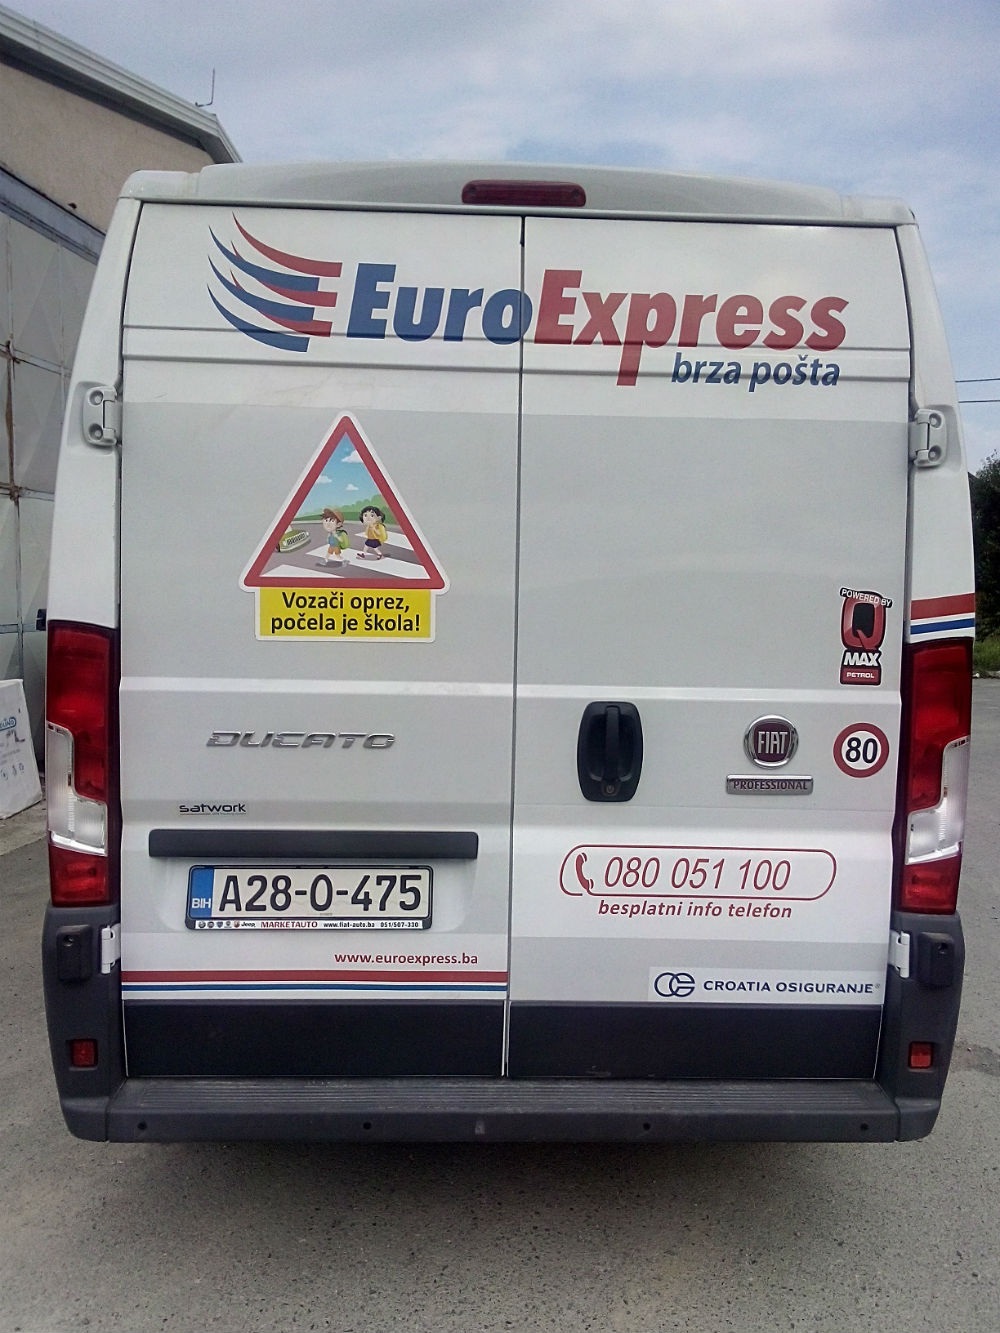 EuroExpress pokrenuo akciju 'Vozači oprez! Počela je škola!'